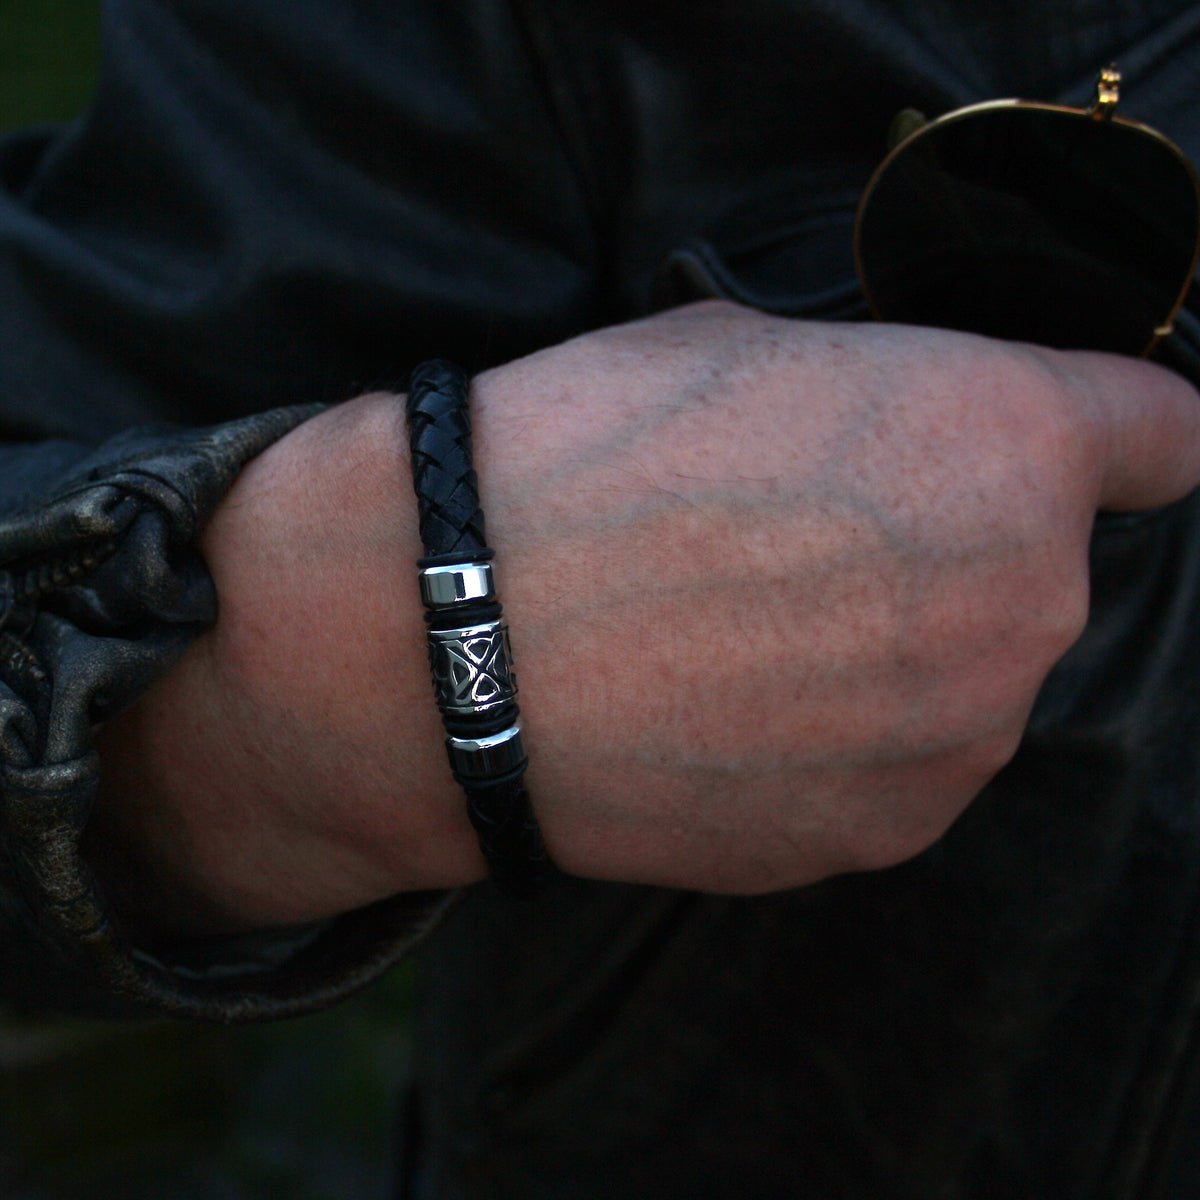 Herren-Leder-Armband-Fuerte-Shine-schwarz-geflochten-Edelstahlverschluss-getragen-wavepirate-shop-f